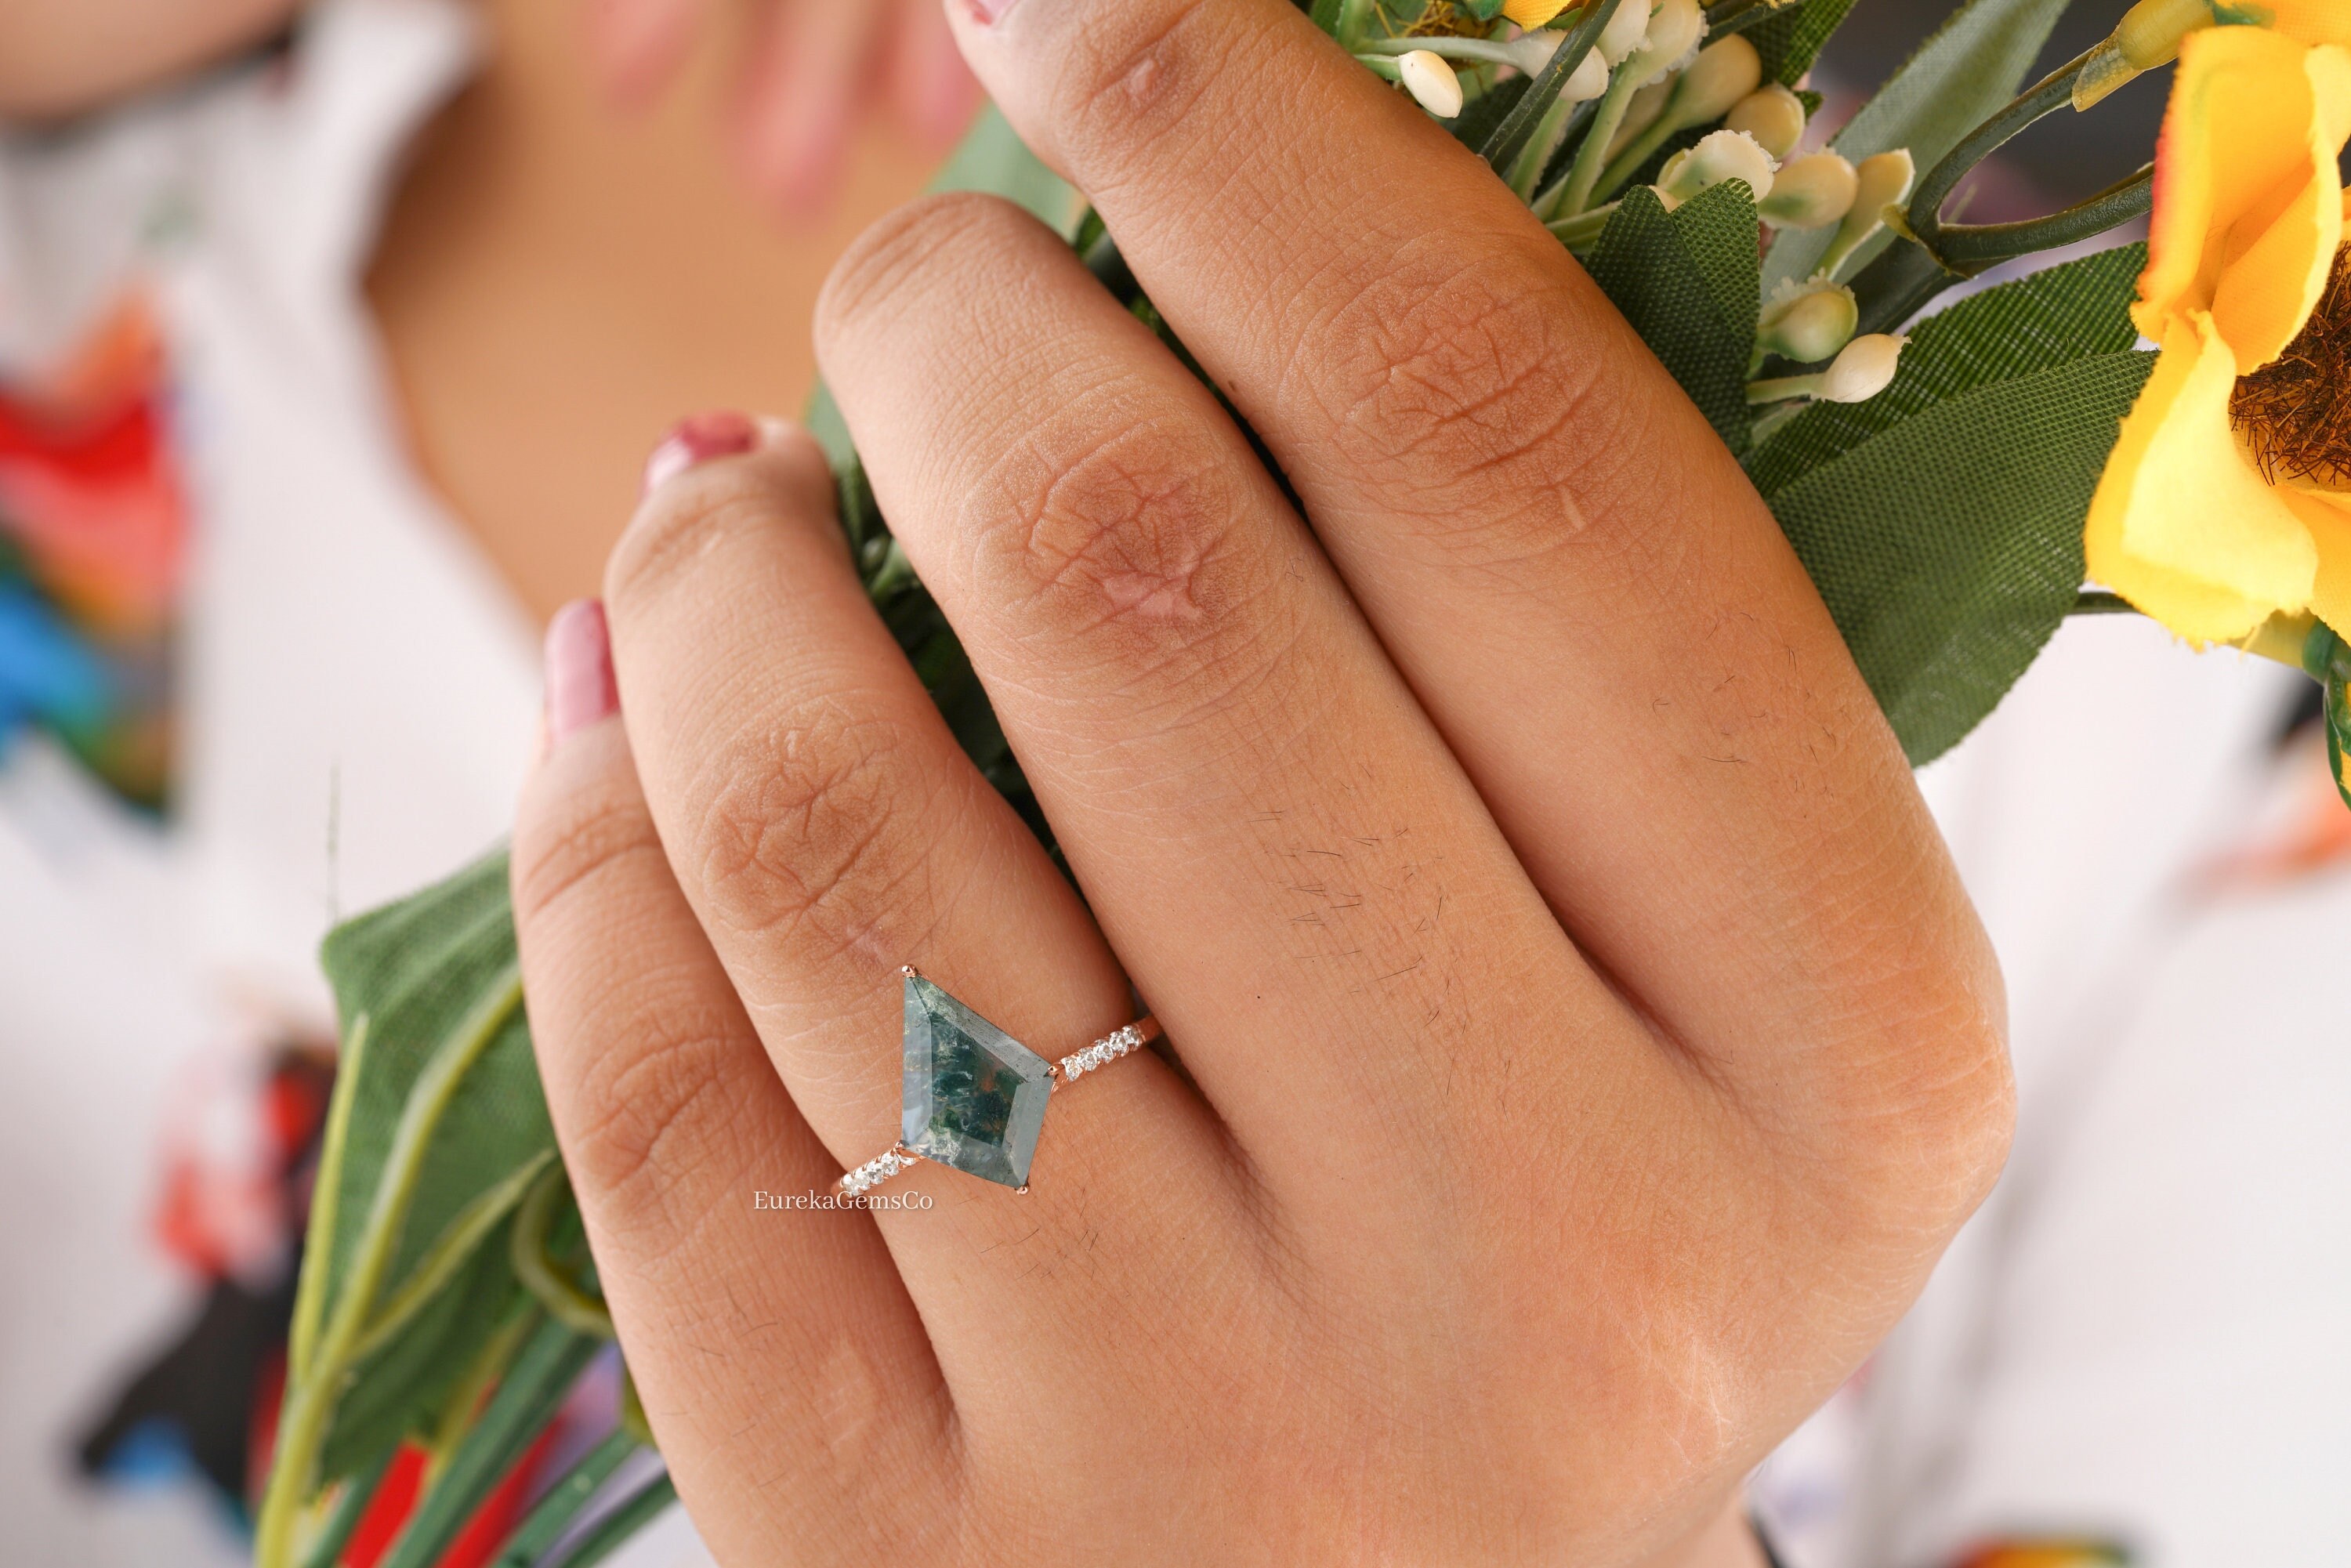 Kite Cut Moissanite Blossom Engagement Ring